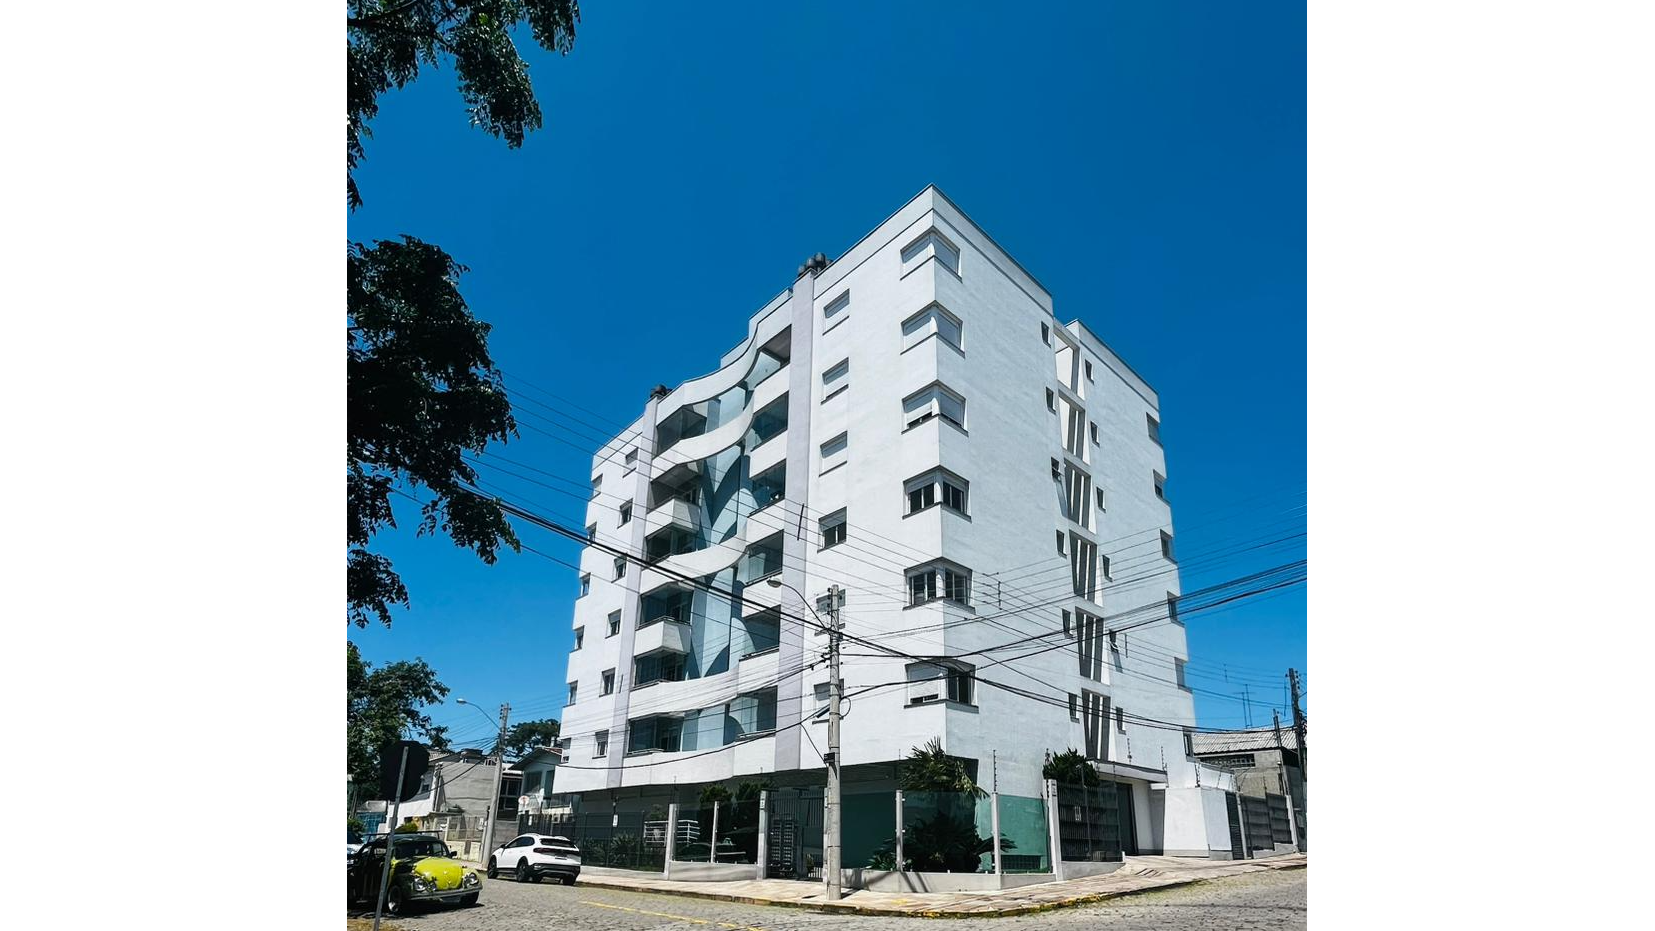 Apartamento 2 quartos sendo 1 suíte para venda no bairro Jardim América em Caxias do Sul